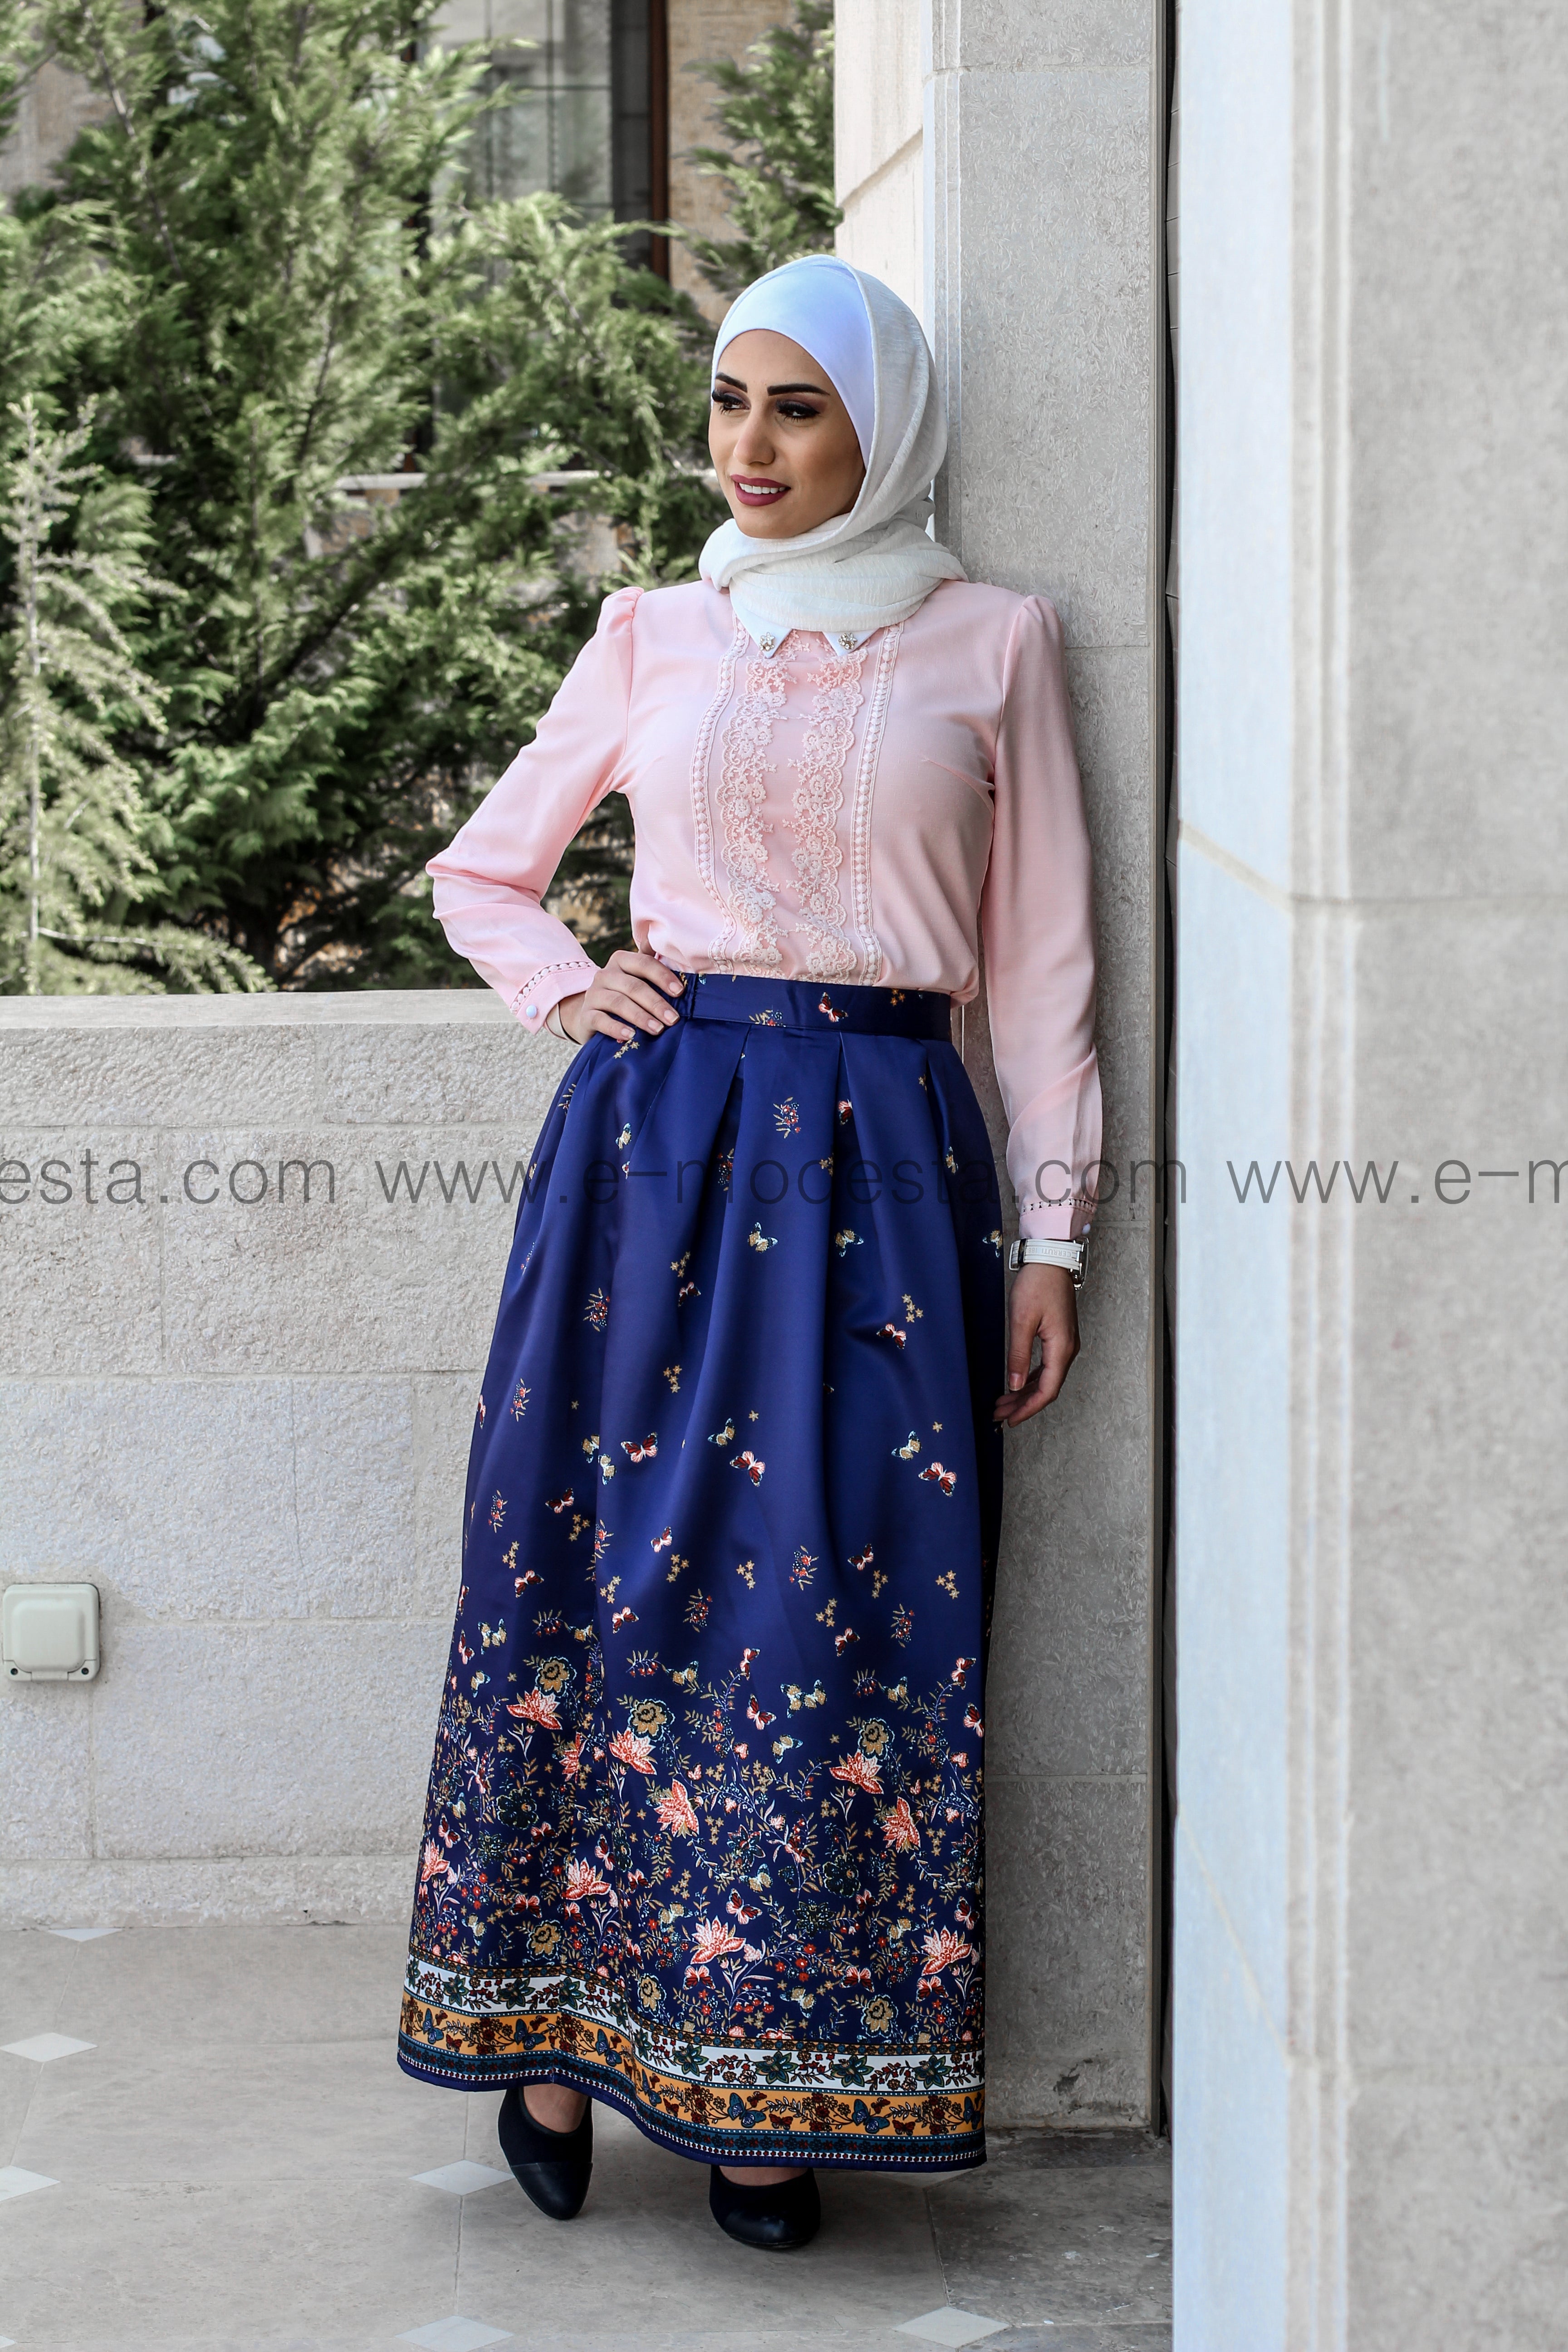 Dark Blue Ball Gown Skirt Look - E-Modesta#Hijab_fashion#